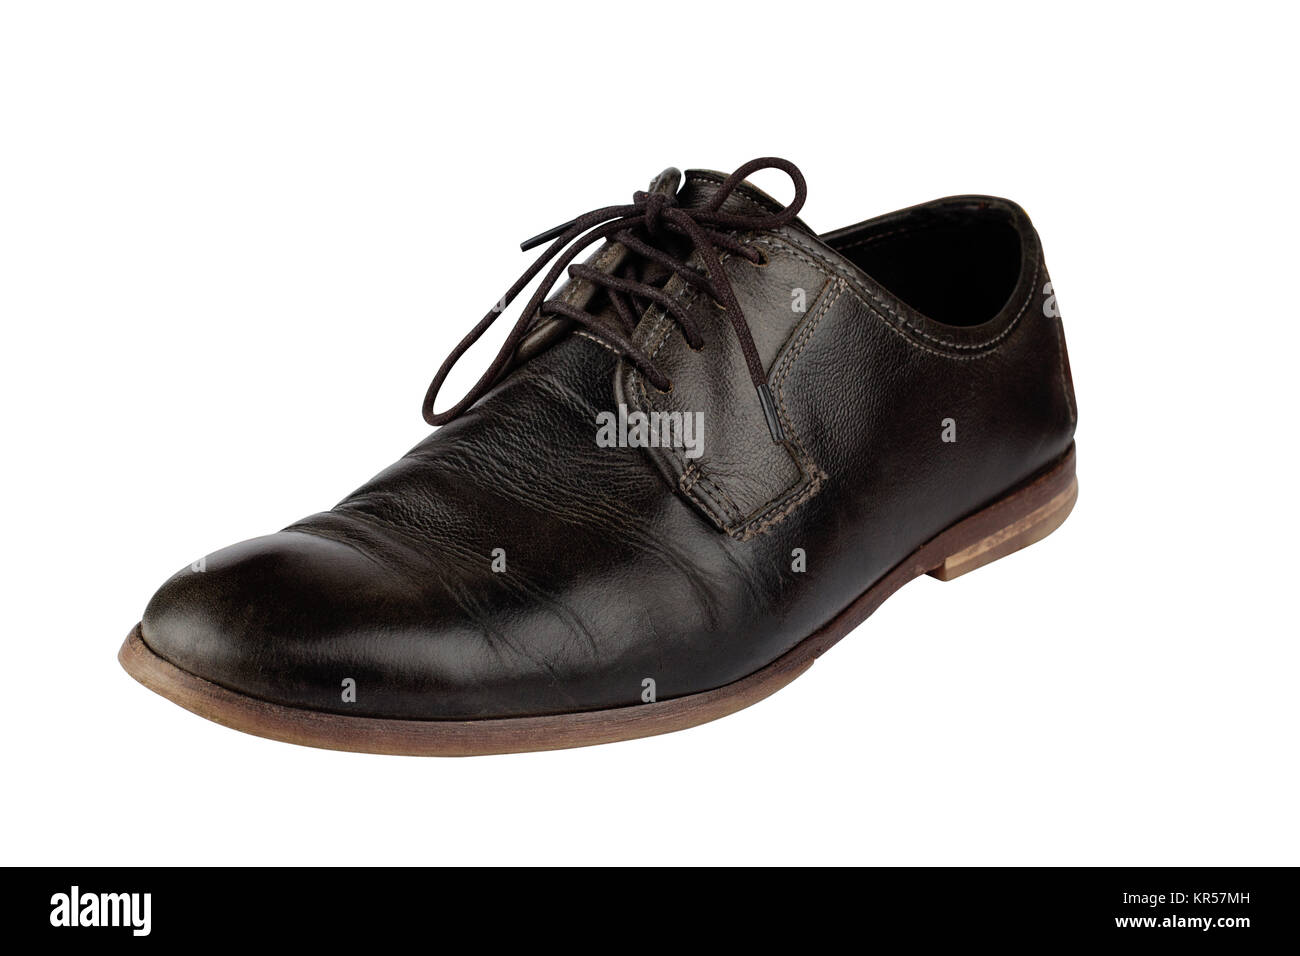 Old and elegant black shoe Stock Photo - Alamy